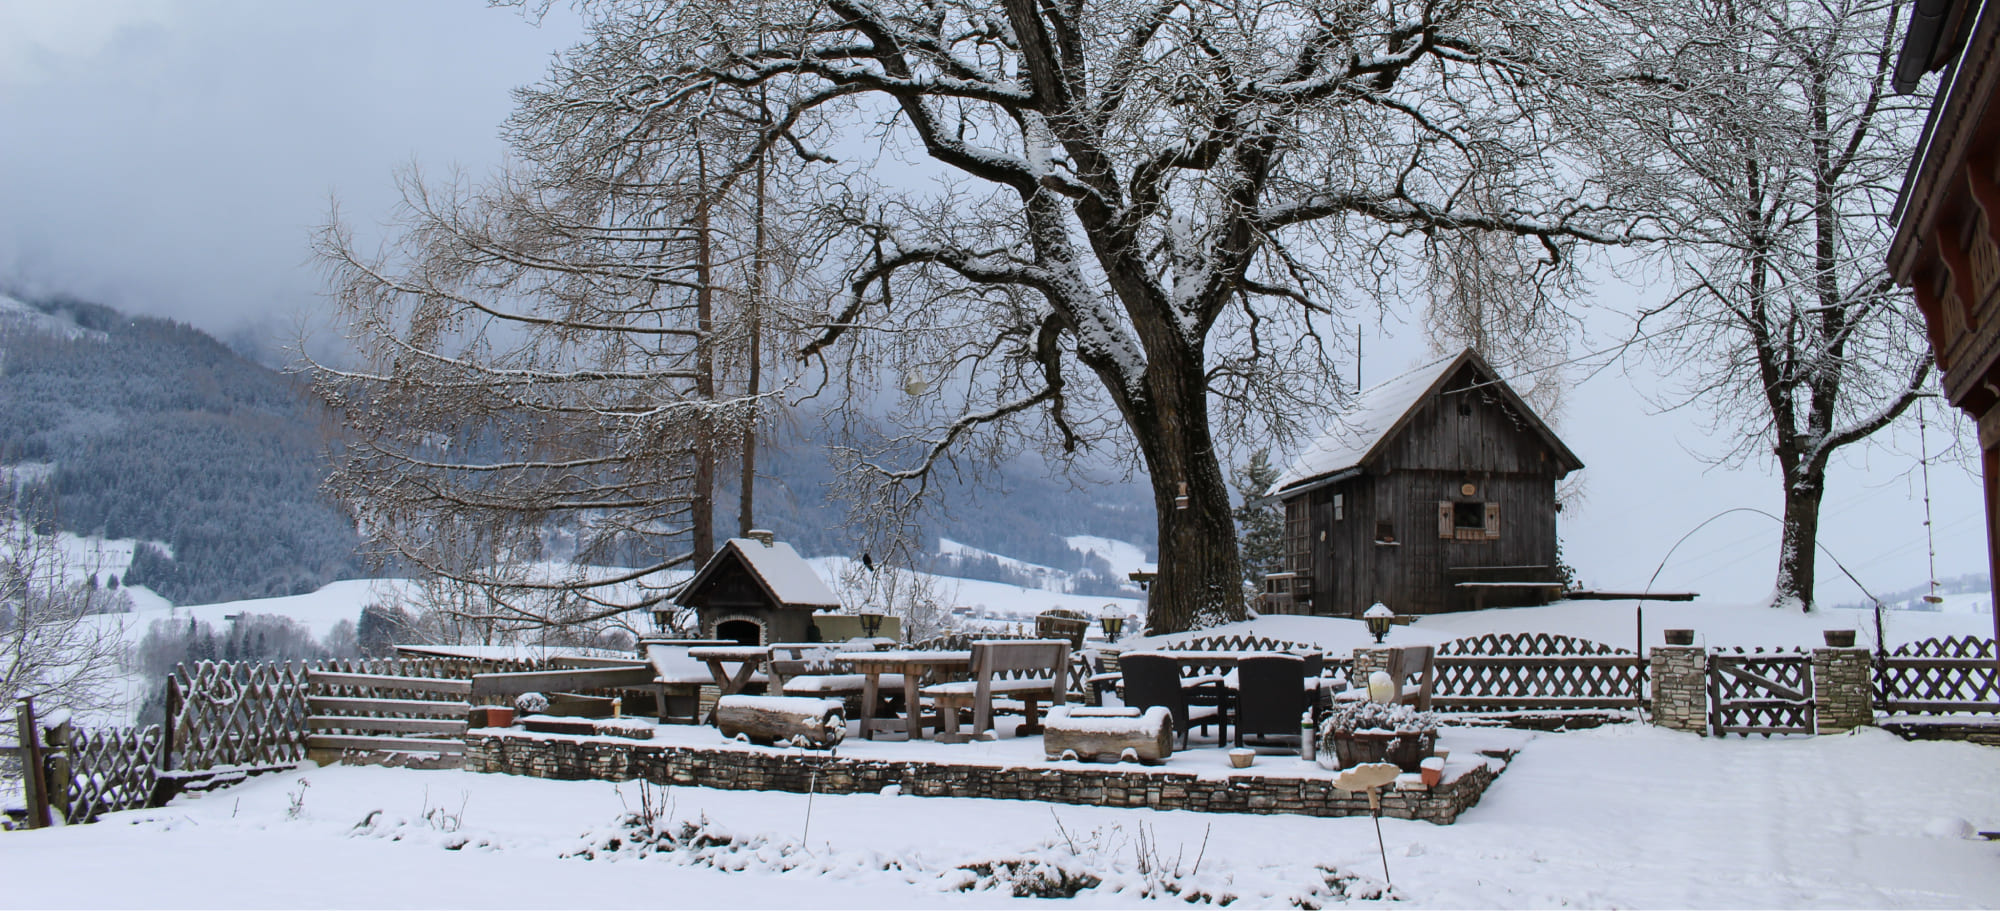 Winter am Bauernhof Lutzmannhof in Irdning, Österreich